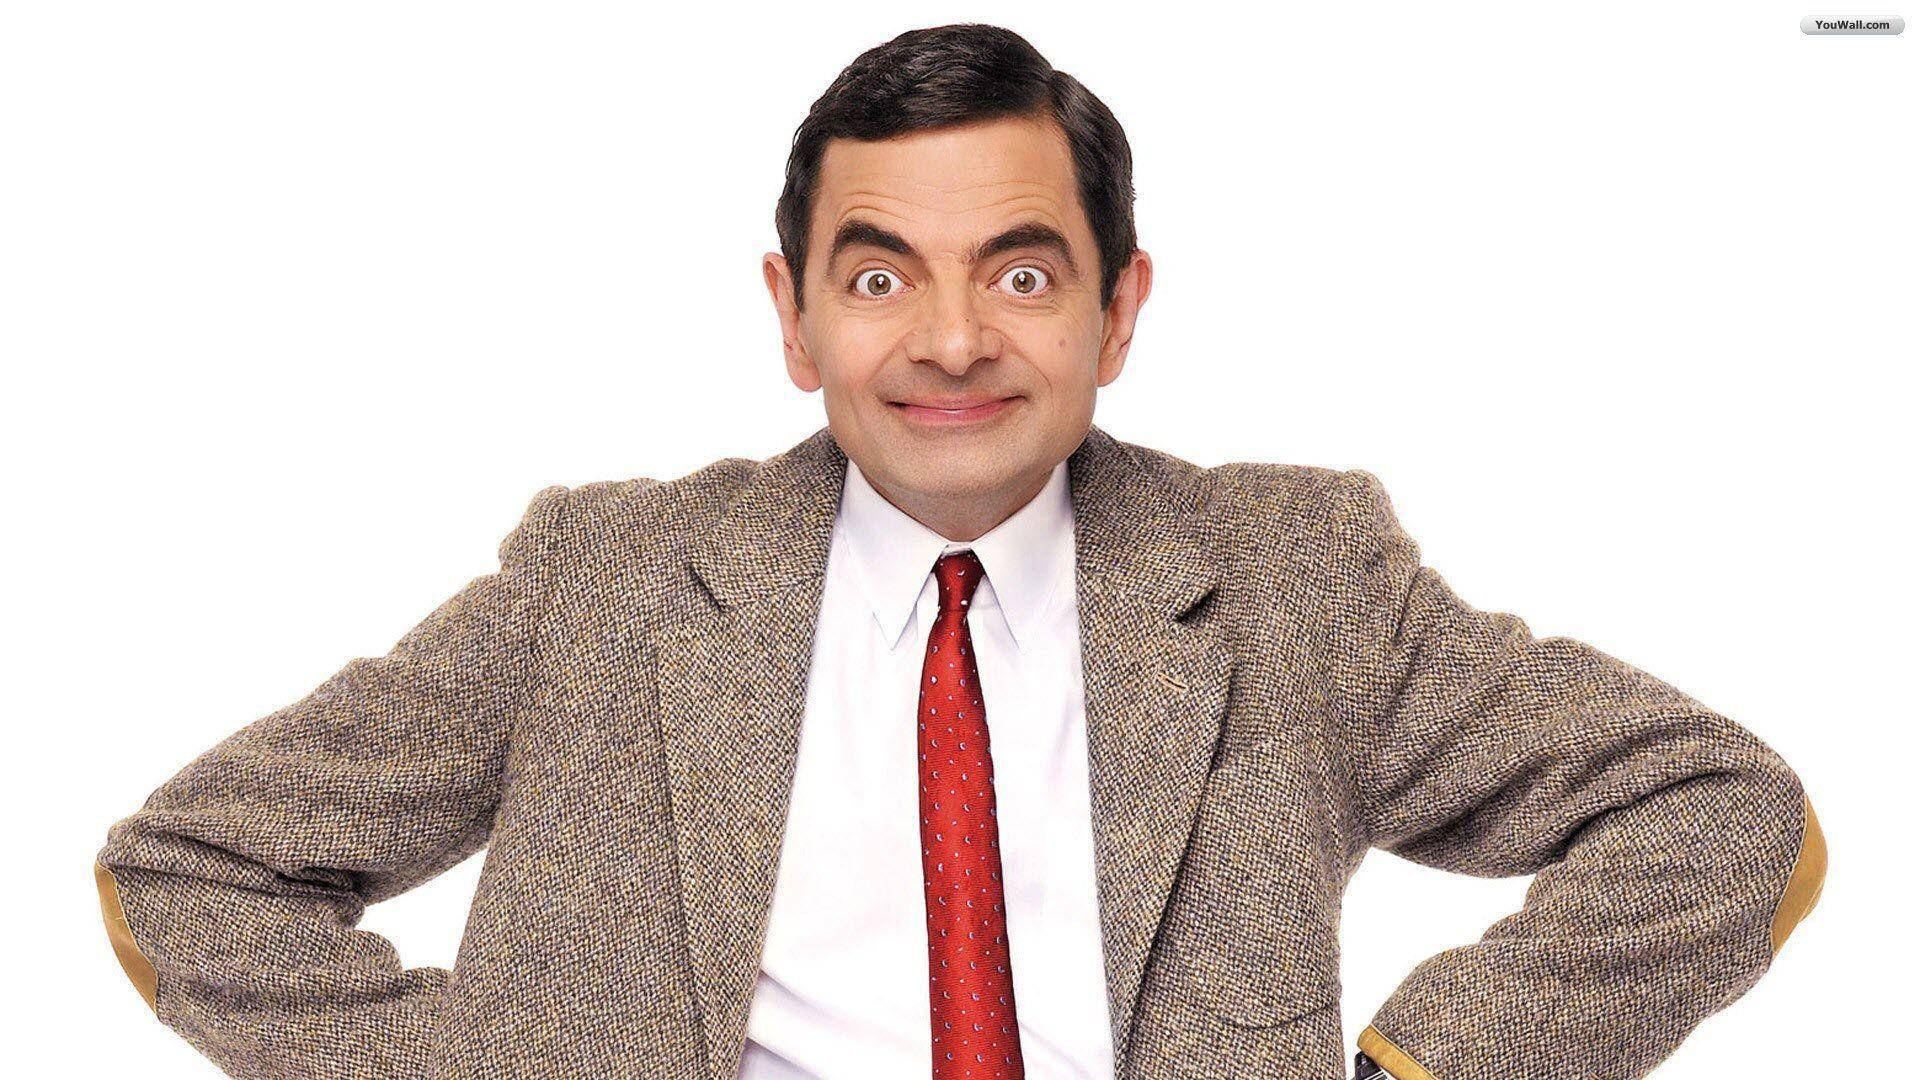 Download Mr Bean Scratch Head Pose Wallpaper  Wallpaperscom